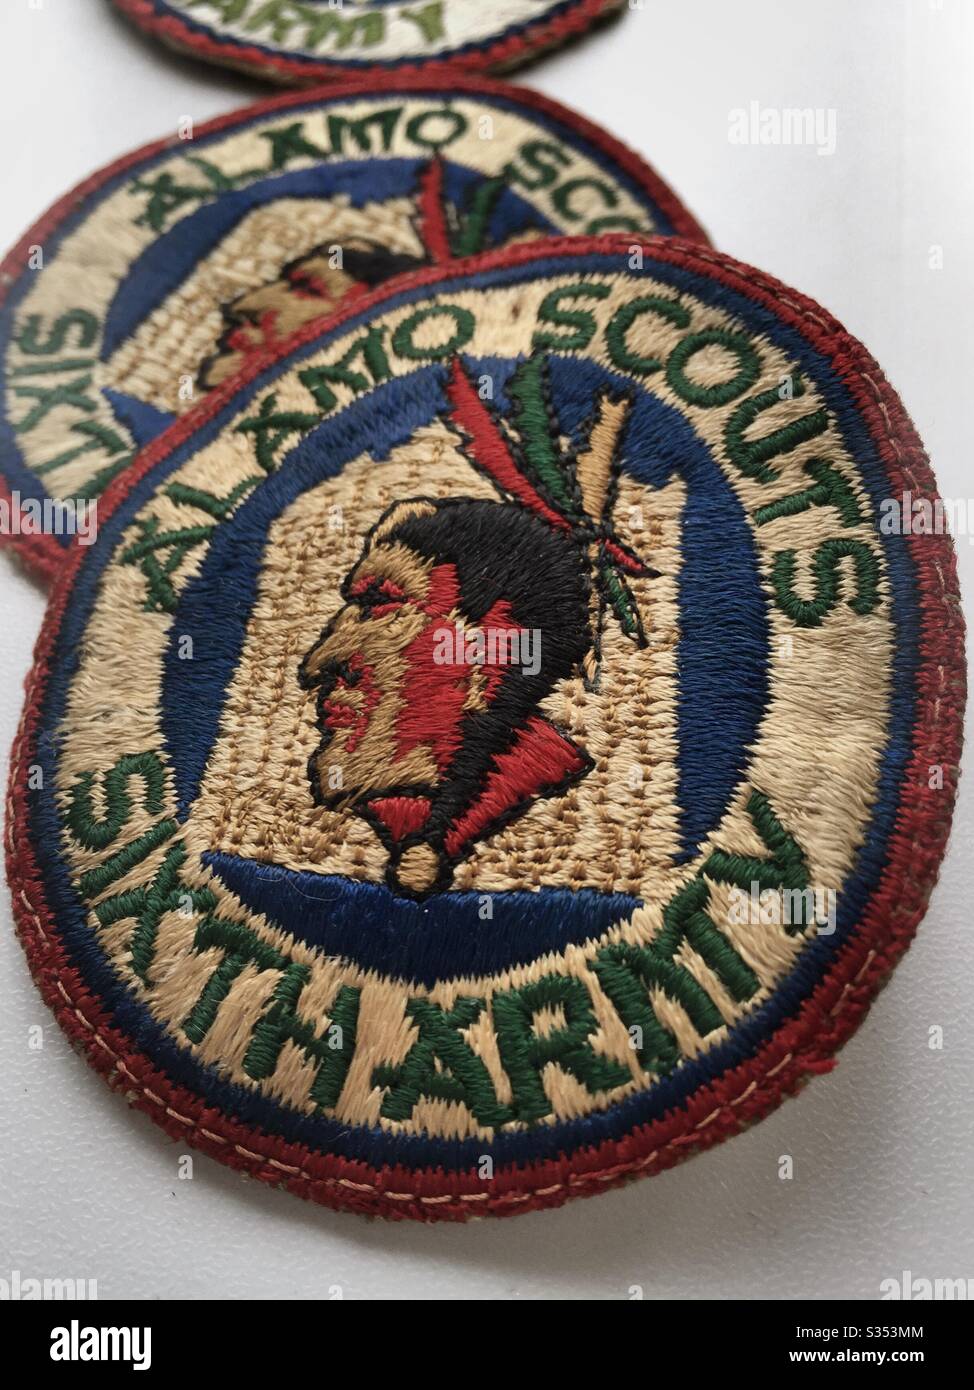 Pièces d'unité de l'équipement de reconnaissance de la sixième armée, les Scouts Alamo, un groupe militaire de théâtre de la deuxième guerre mondiale du pacifique, années 1940, États-Unis Banque D'Images